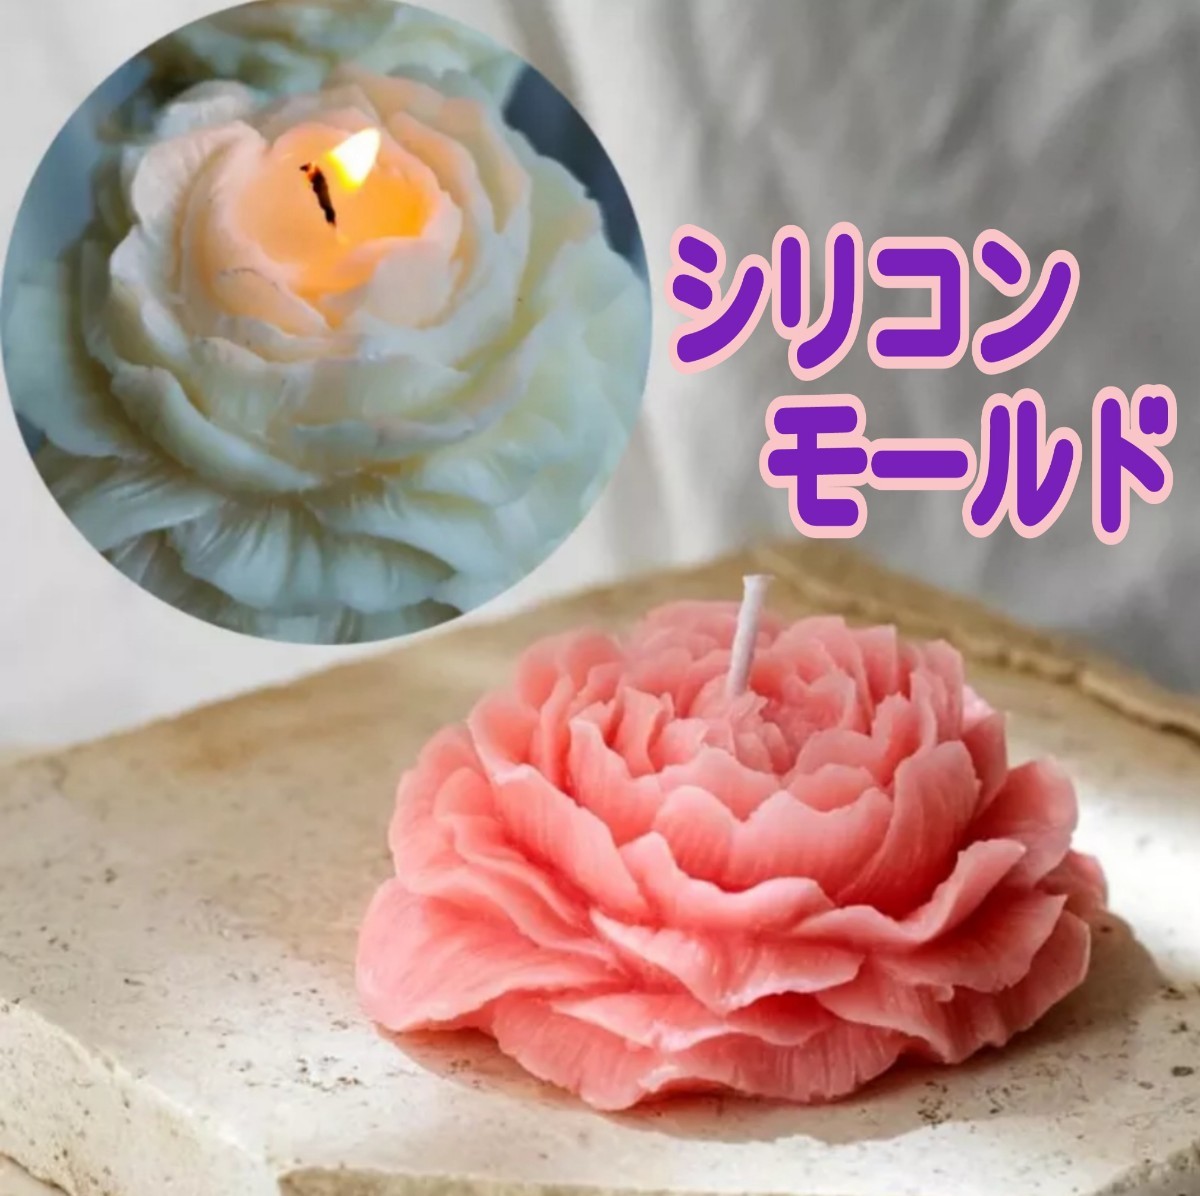  силикон mold роза свеча свеча type свеча mold aroma Stone .... роза цветок type mold инструмент цельный 